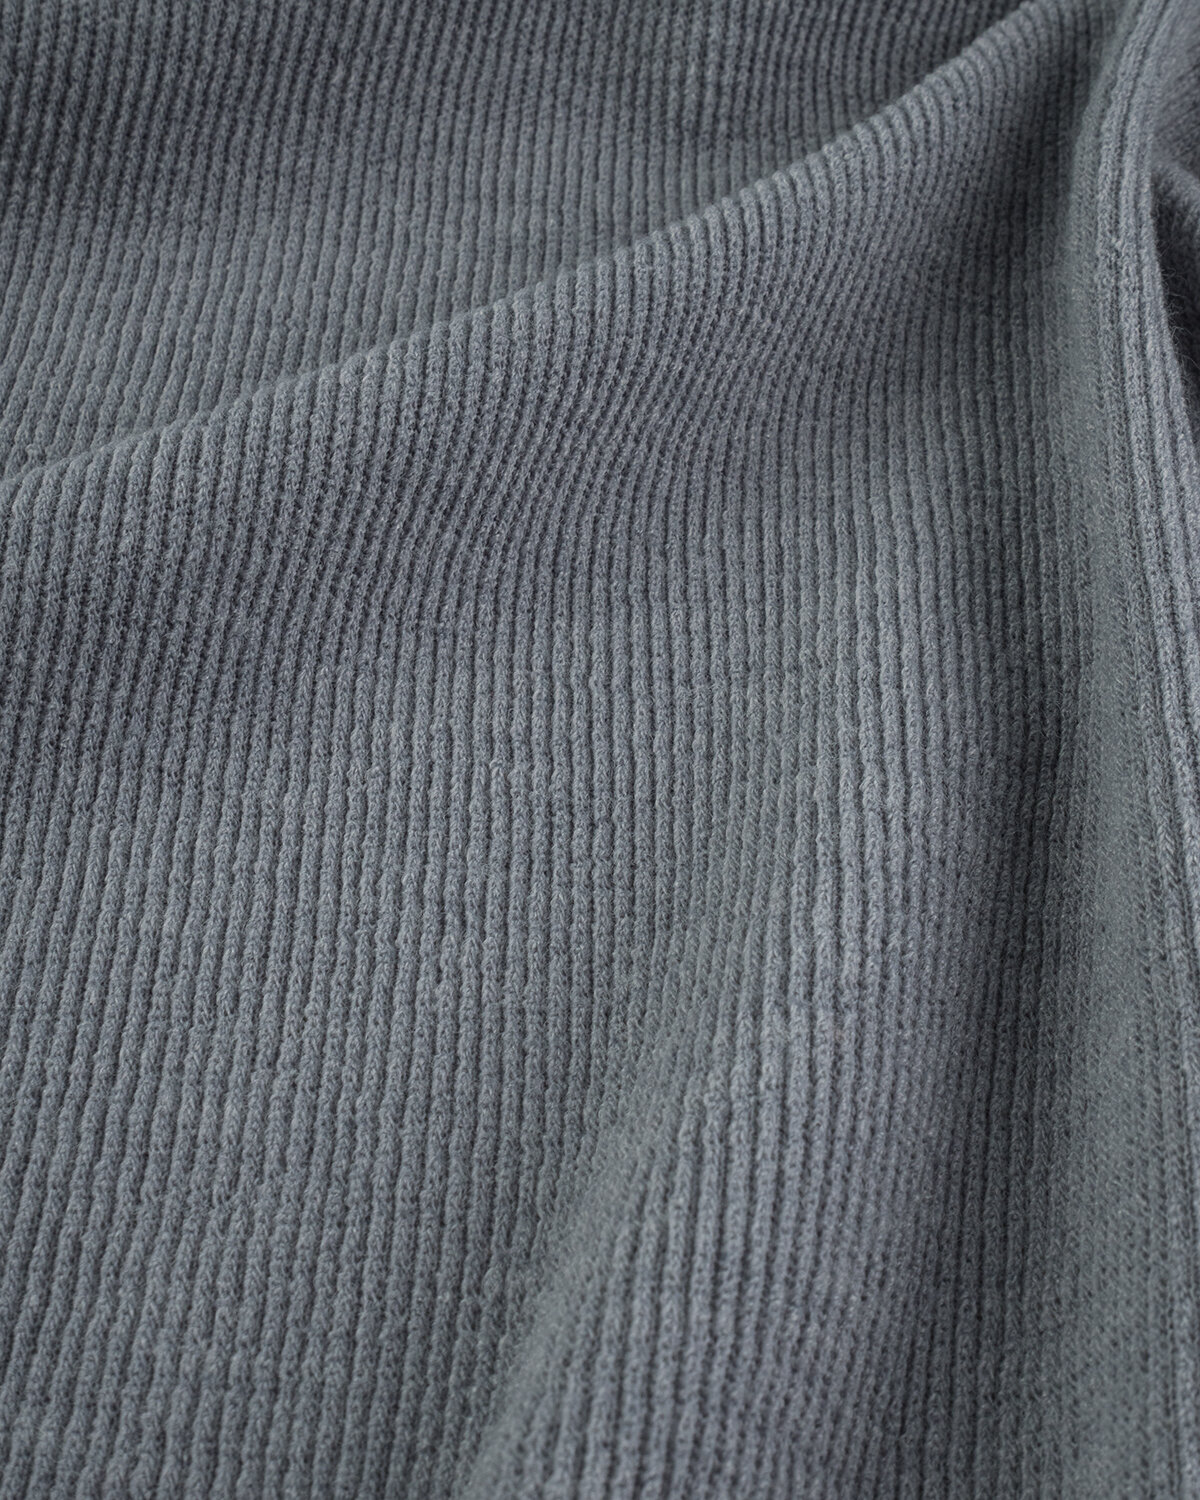 Ткань для шитья и рукоделия Трикотаж "Дженифер" 1 м * 150 см, серый 004